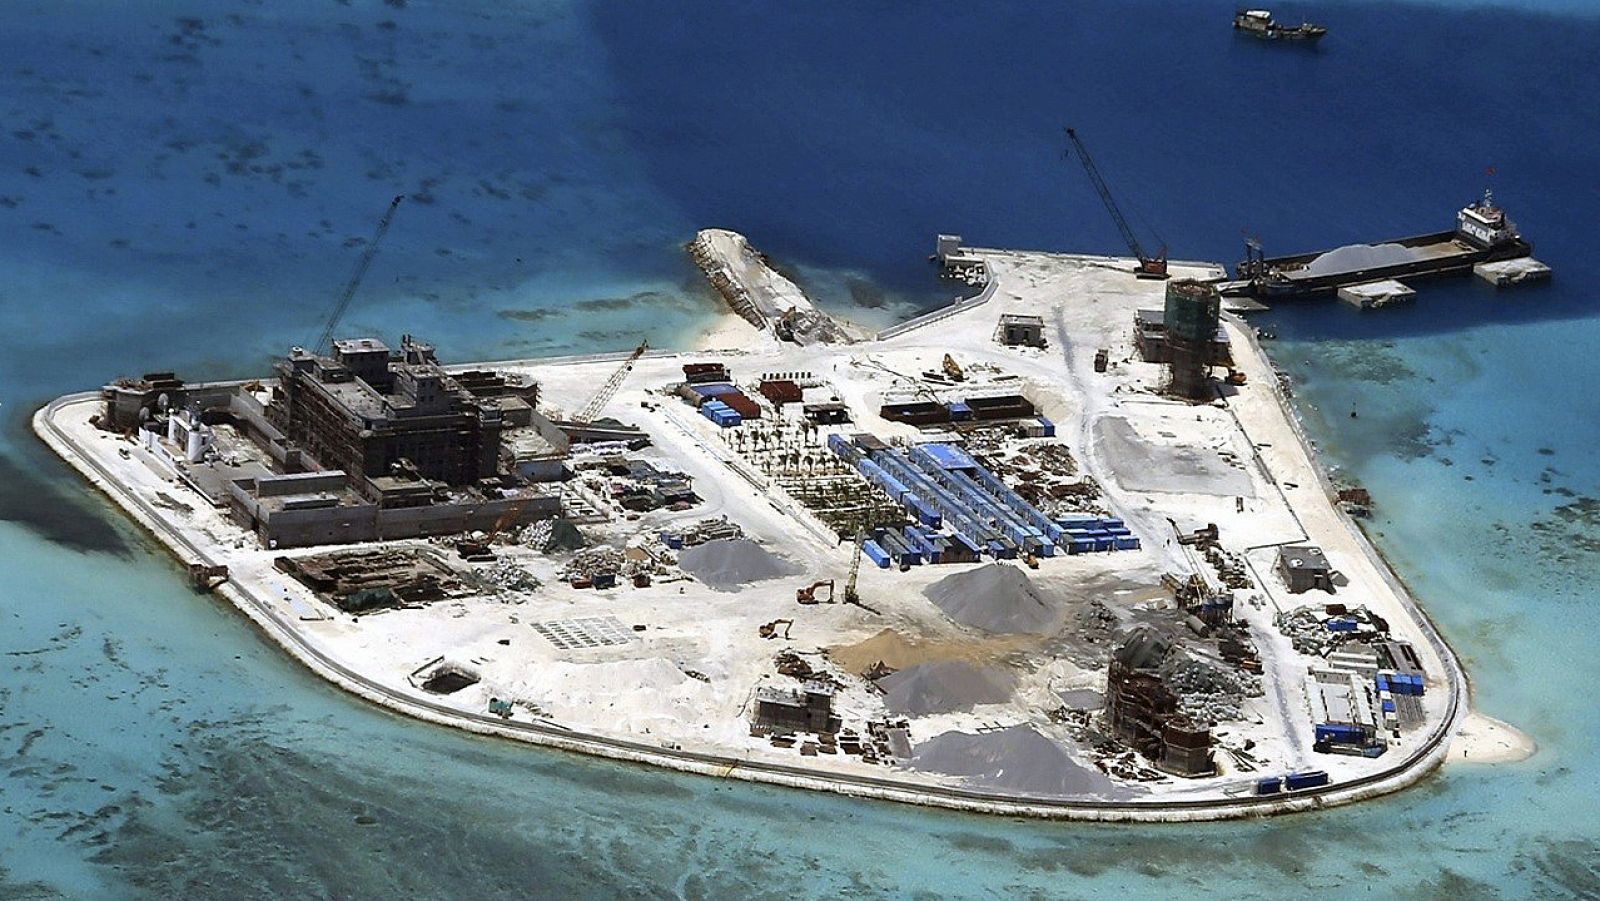 Fotografía facilitada el 17 de febrero de 2015, que muestra una de las islas del archipiélago Paracel en el arrecife de Mabin,  donde China construía unas instalaciones el 18 de febrero de 2015. EFE/Fuerzas Armadas de Filipinas